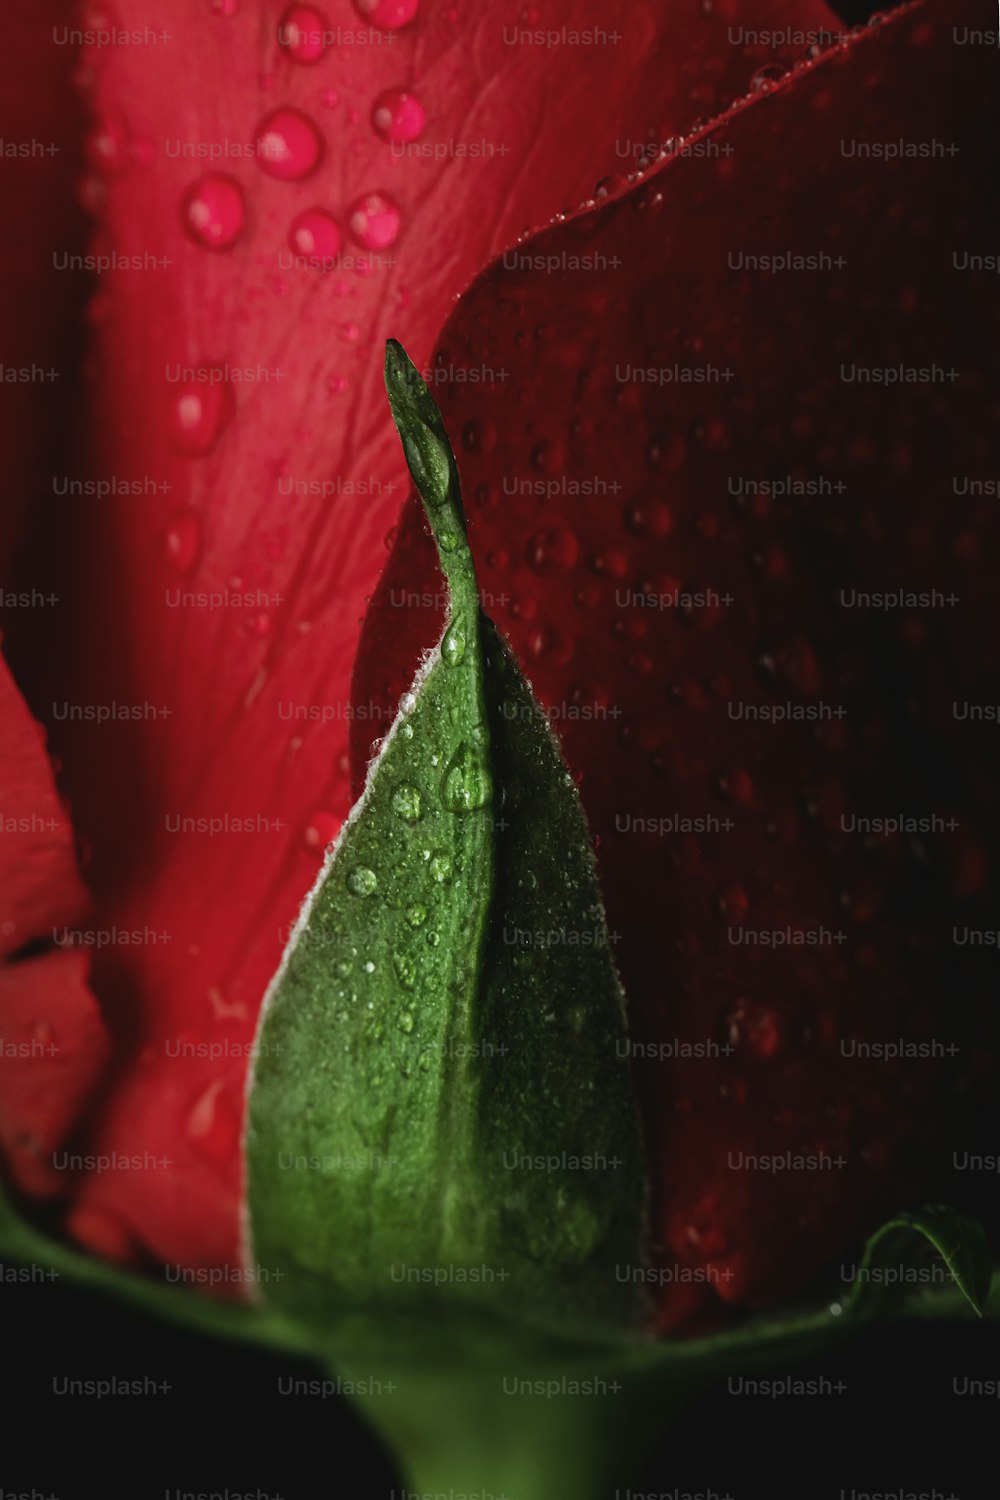 uma rosa vermelha com gotículas de água sobre ela